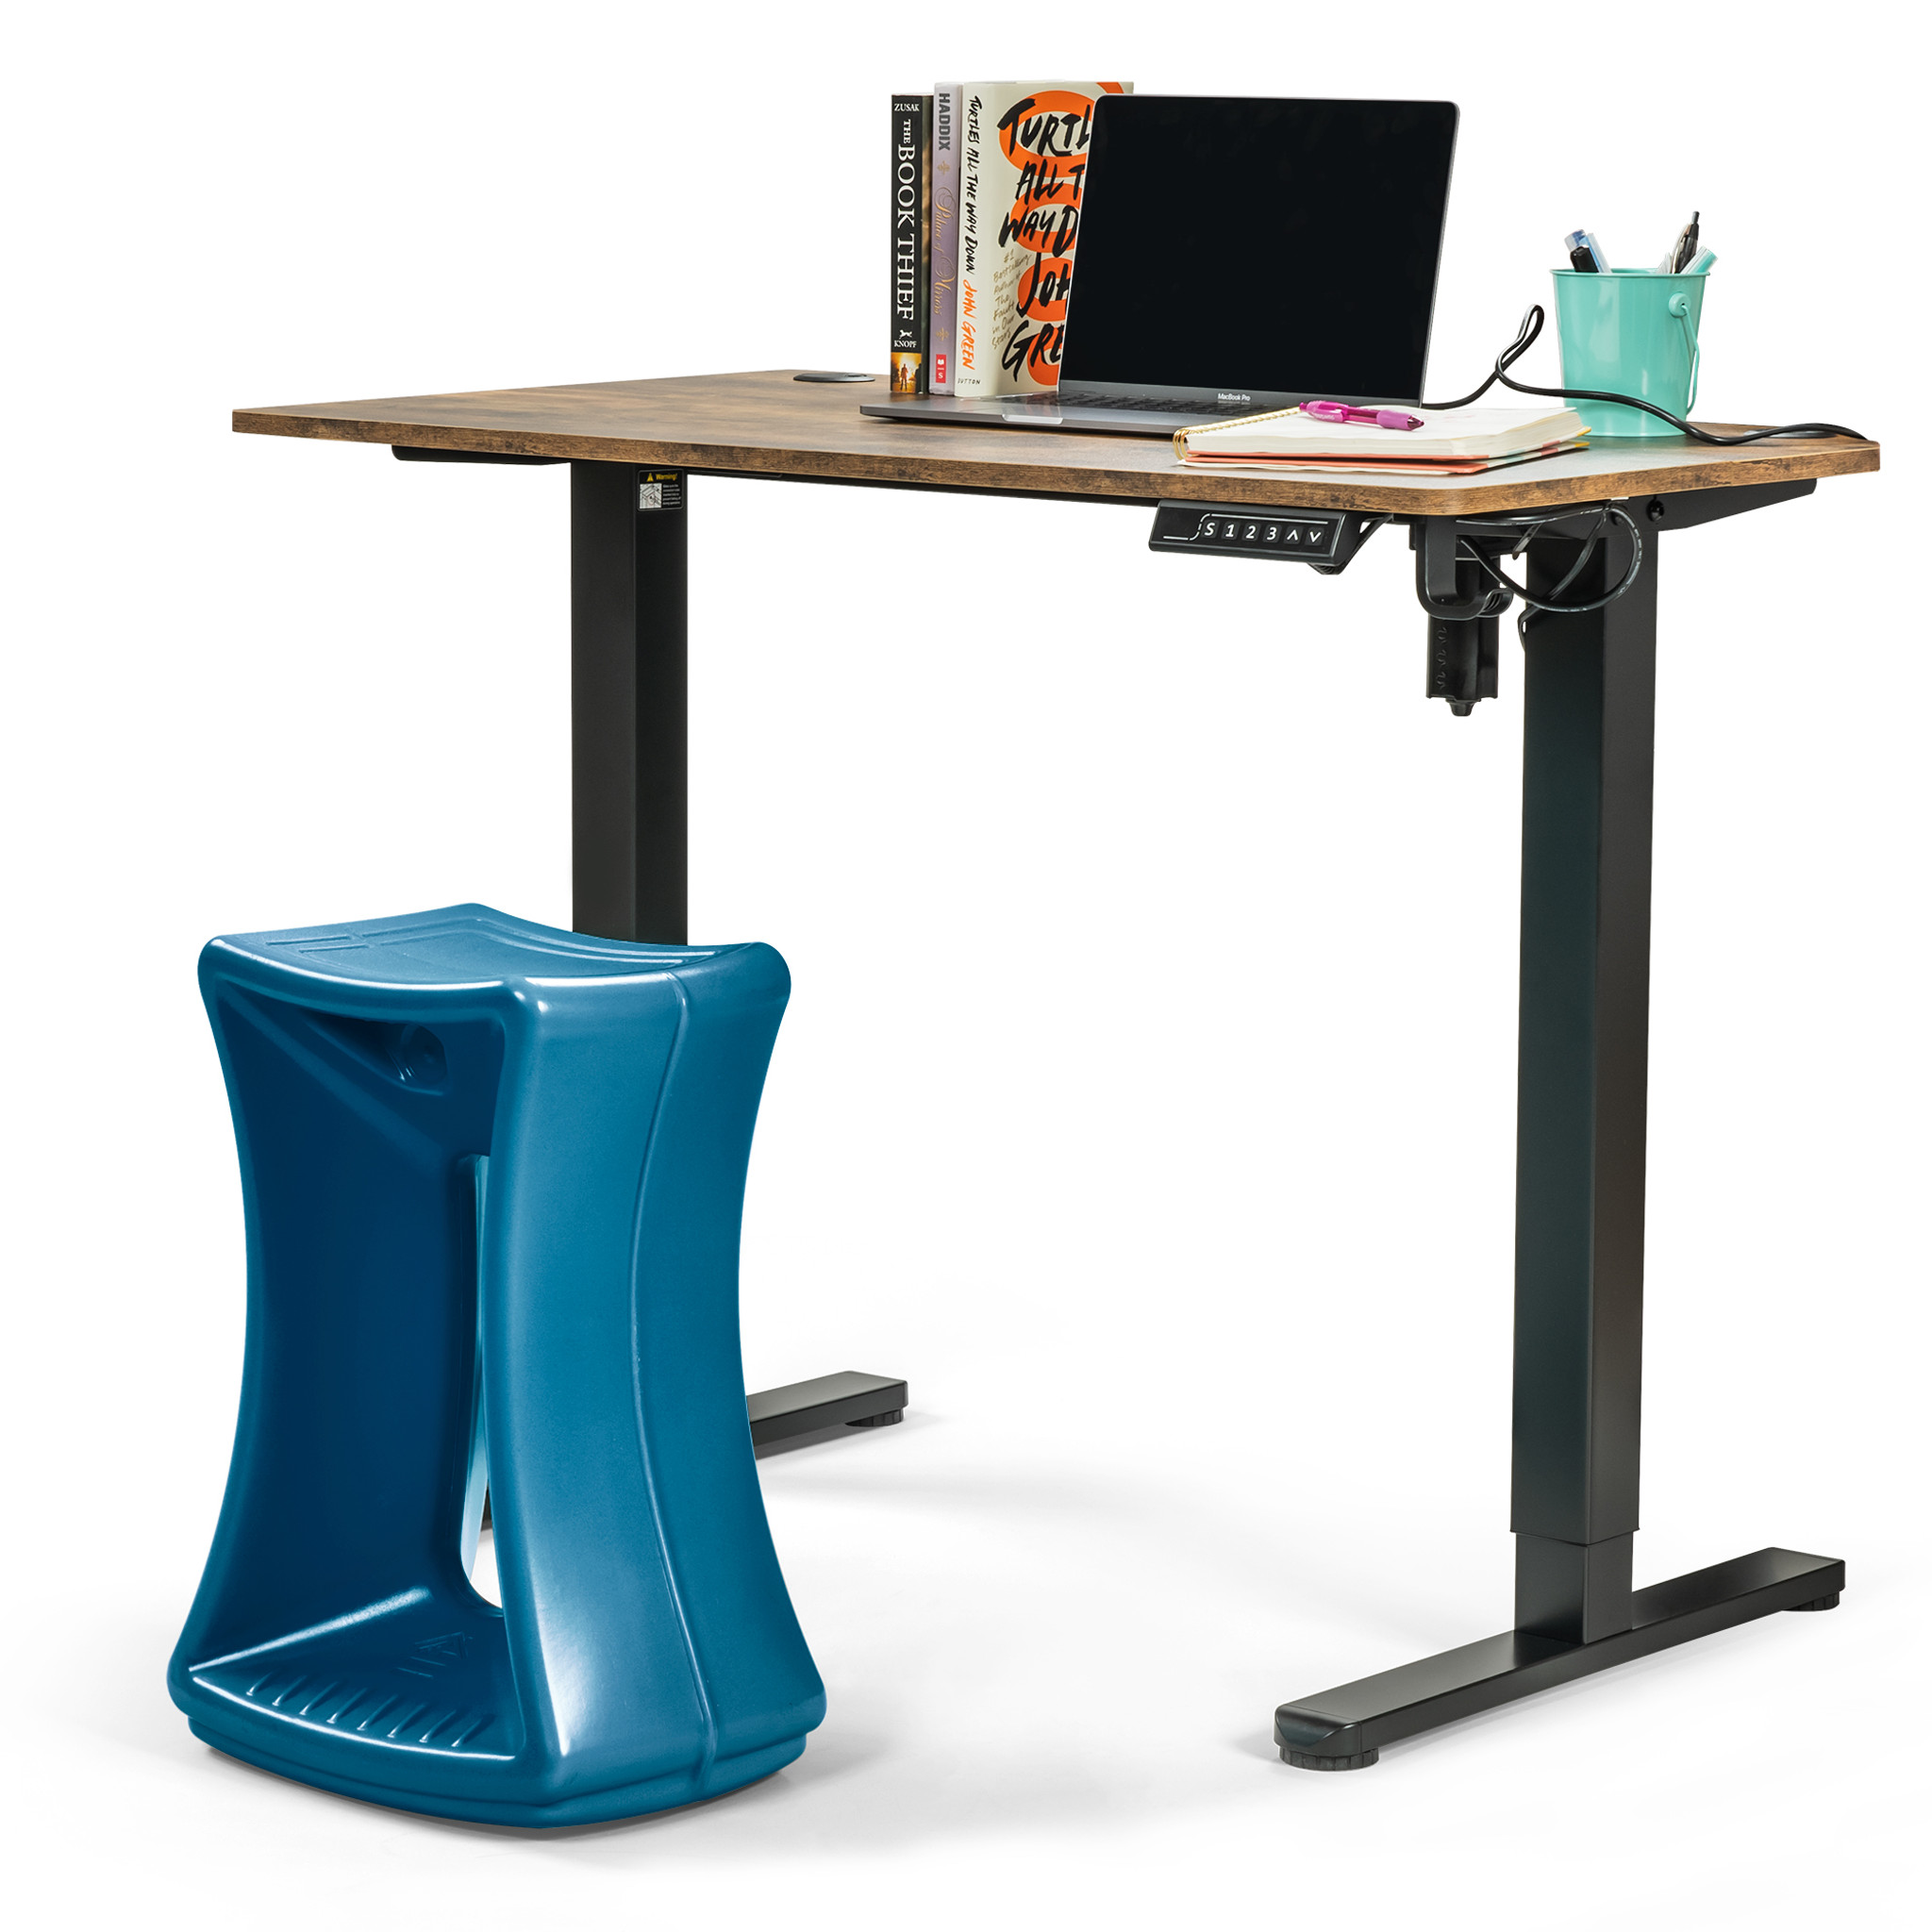 Uplift Desk - Motion Stool (Blue)